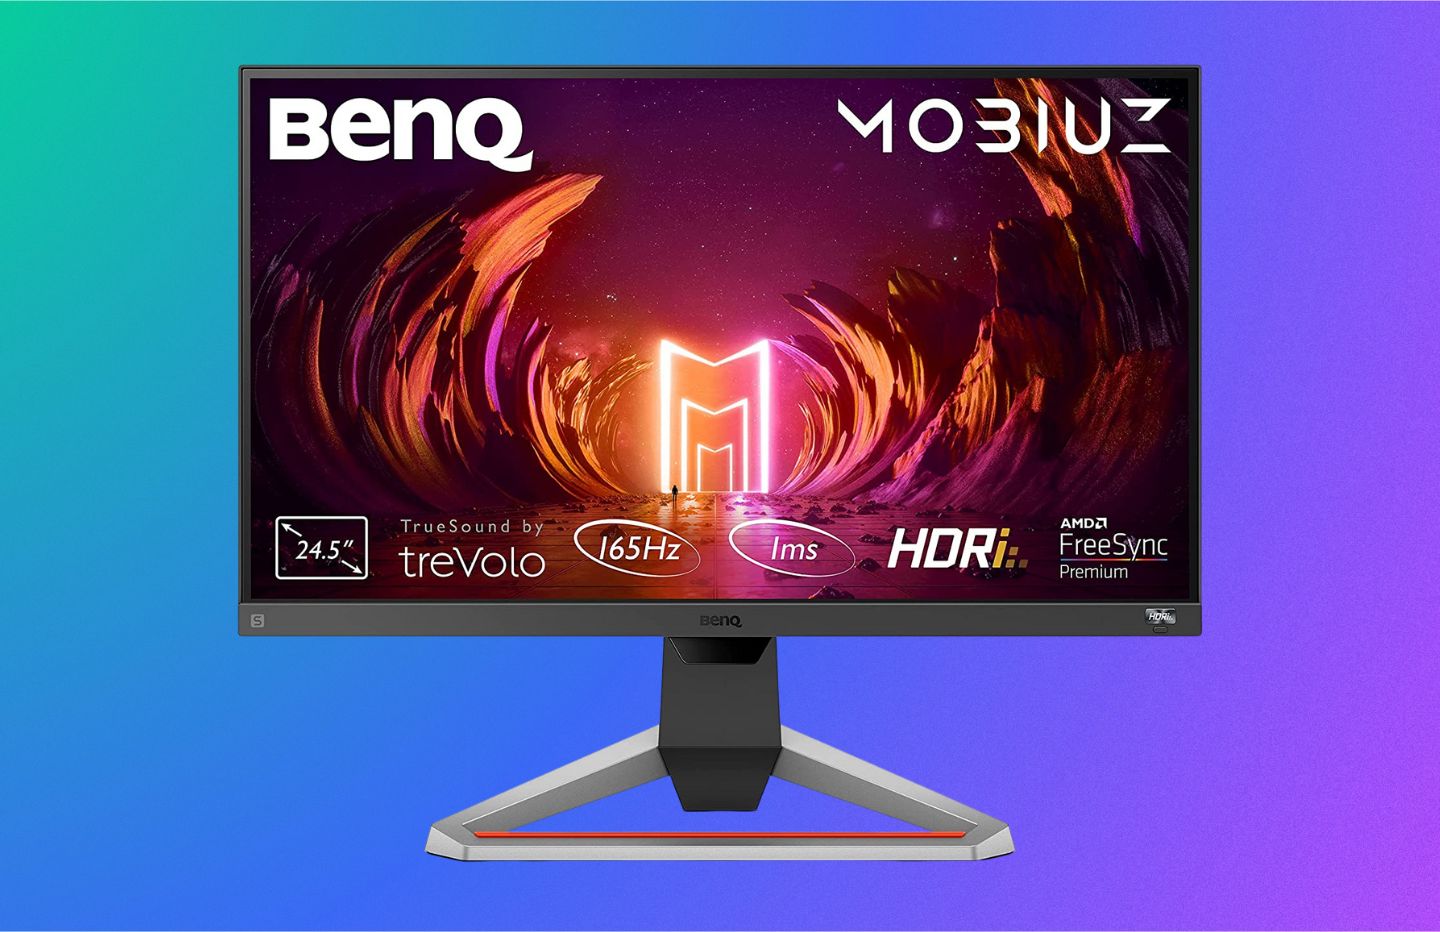 L'écran PC gaming BenQ Mobiuz de 24 pouces (165 Hz, 1ms) est en promotion